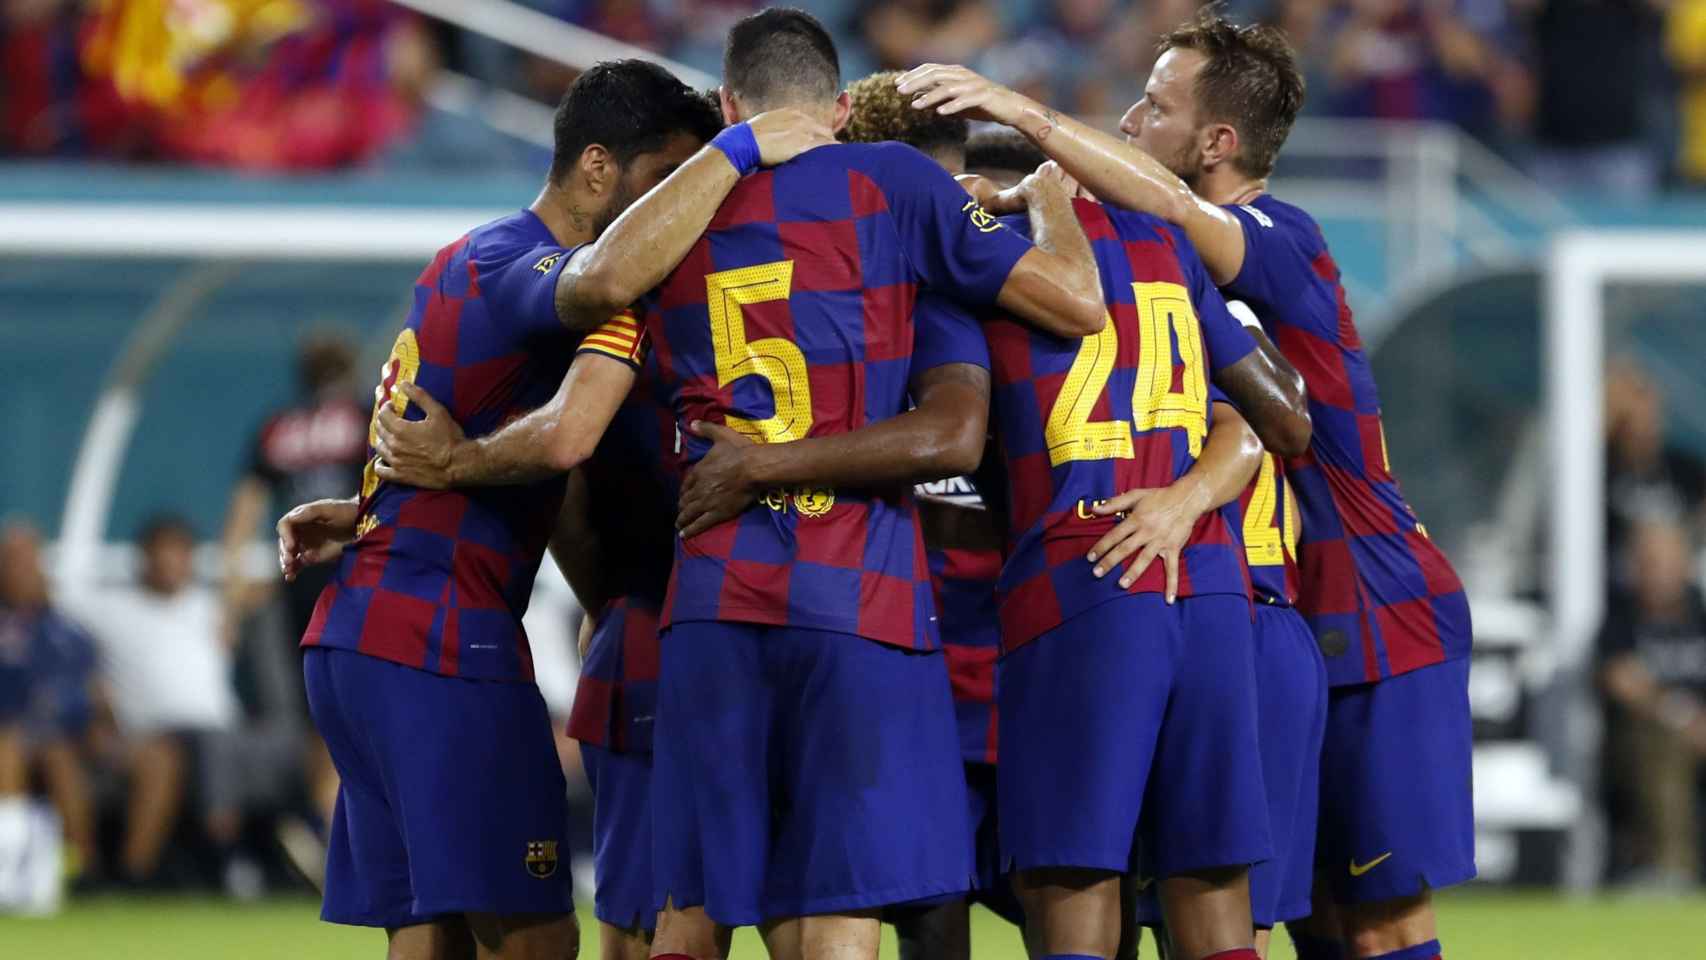 Los jugadores del Barça celebrando el gol contra el Nápoles / FC Barcelona